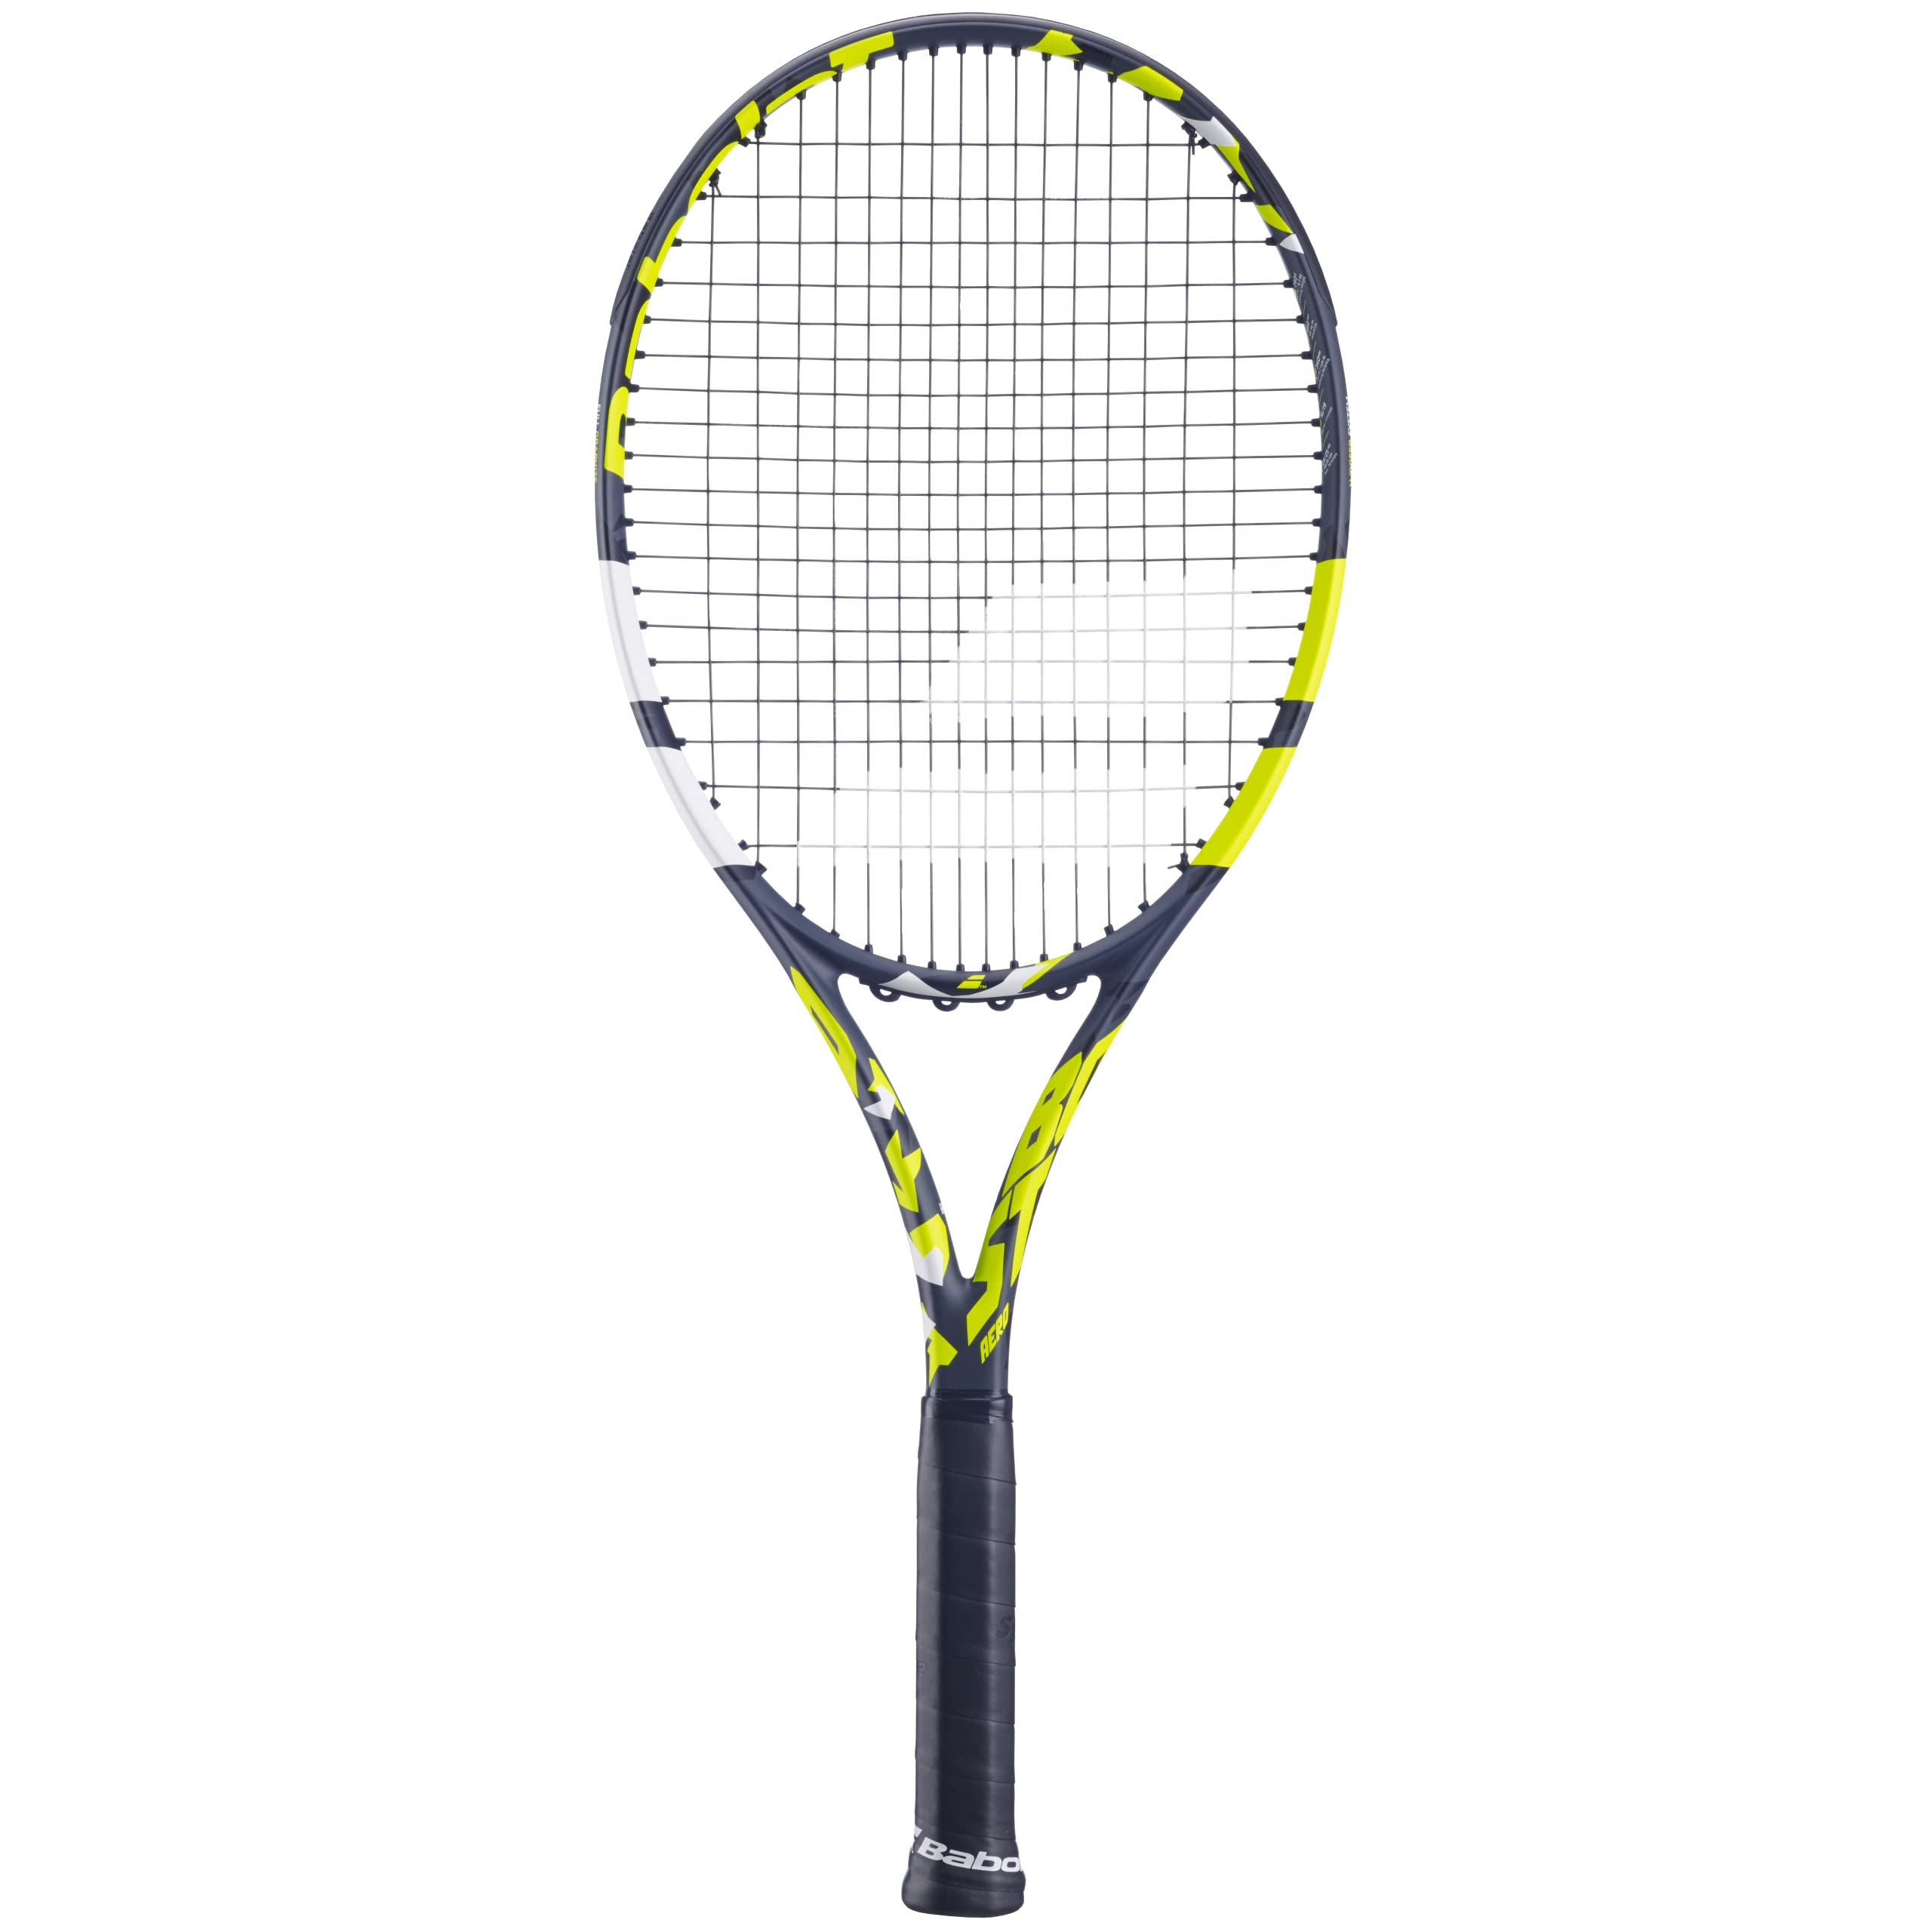 Babolat - Tennisschläger für Erwachsene Boost Aero - Leichter Schläger für Damen oder Herren - Besaitet und Rahmen aus Graphit für Leichtigkeit und Power beim Spielen - Größe 2 - Farbe: Grau/Gelb